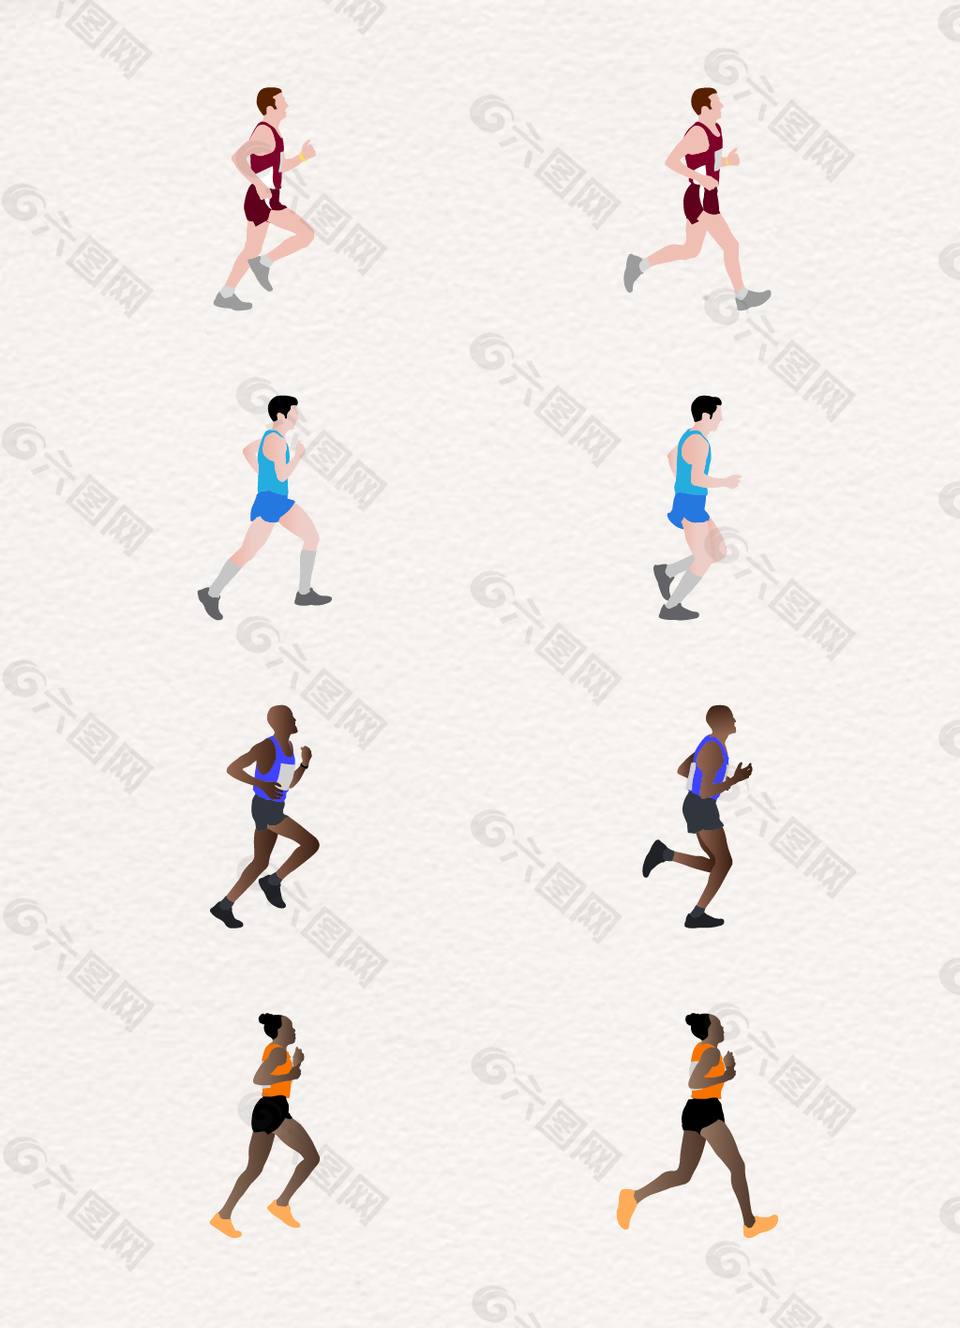 卡通跑步运动人物设计素材